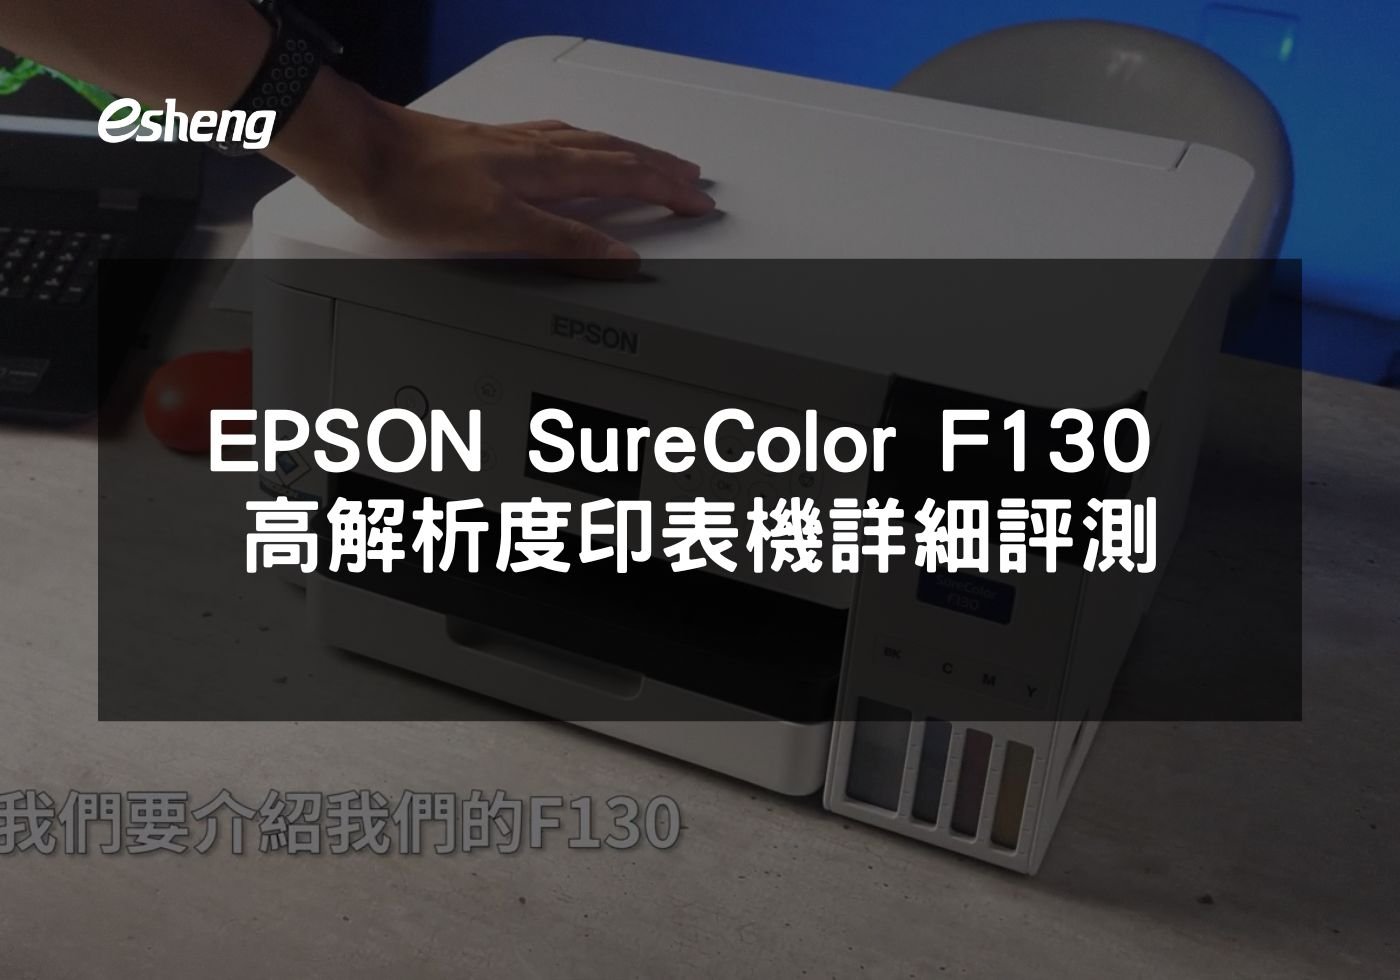 閱讀更多文章 EPSON SureColor F130 高解析度印表機詳細評測